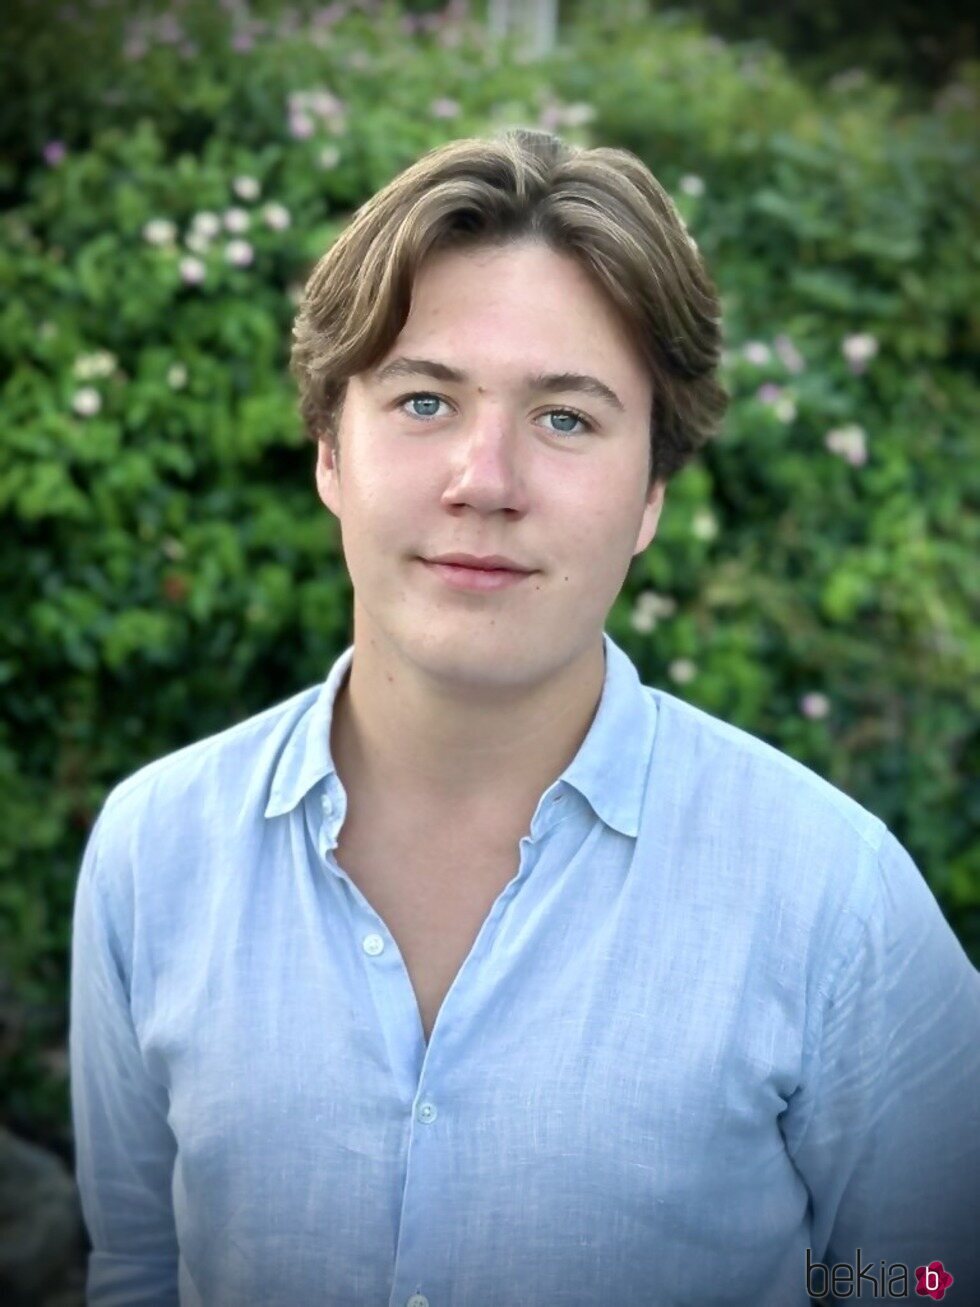 Christian de Dinamarca en un posado por su 18 cumpleaños